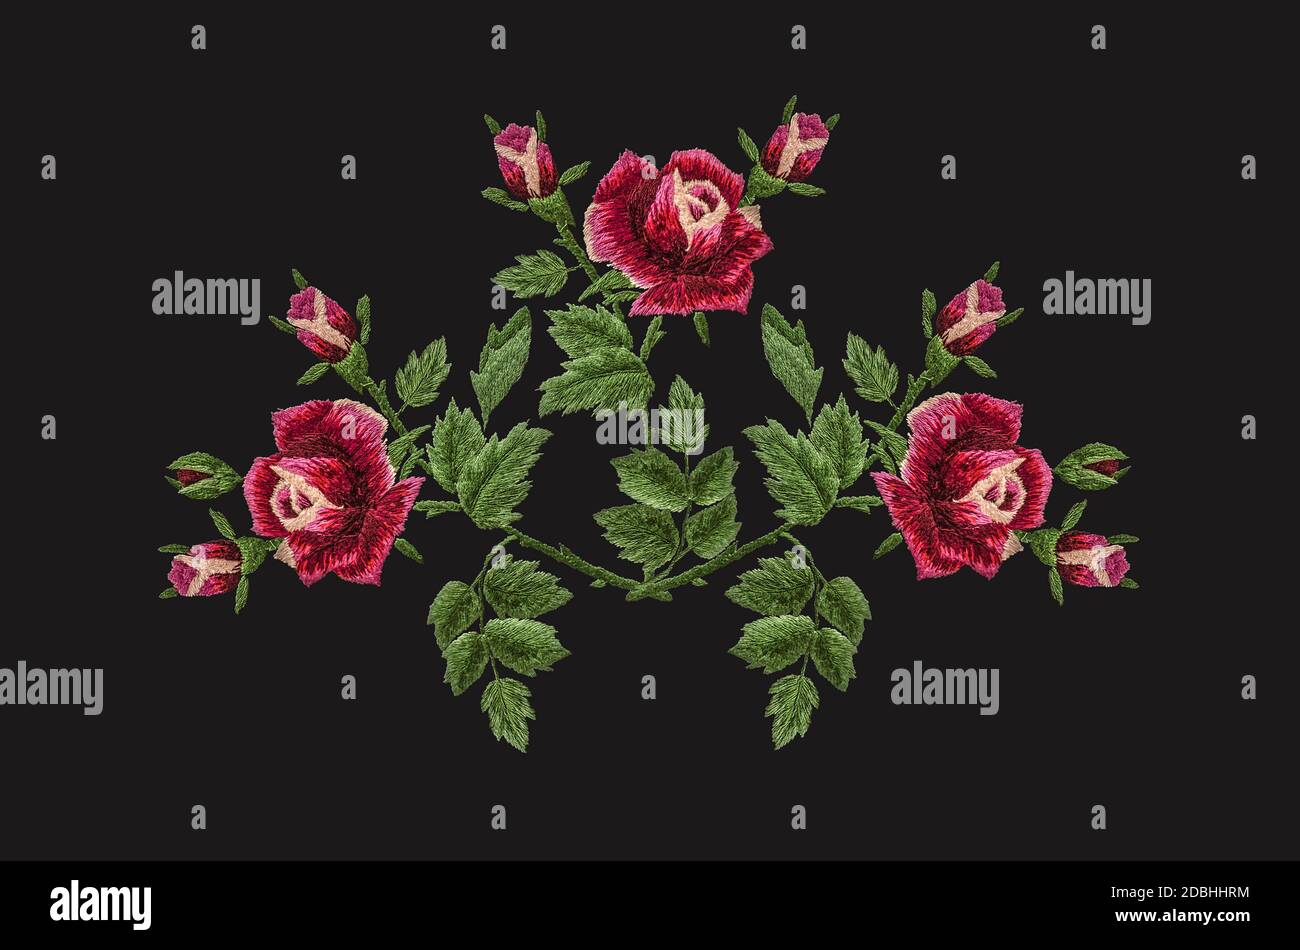 3DDas Muster für Satinstich Stickerei eines Bouquets von Drei Rosen mit rot-rosa Blütenblättern auf einem Zweig mit grün Blätter und Knospen auf schwarzem Hintergrund Stockfoto